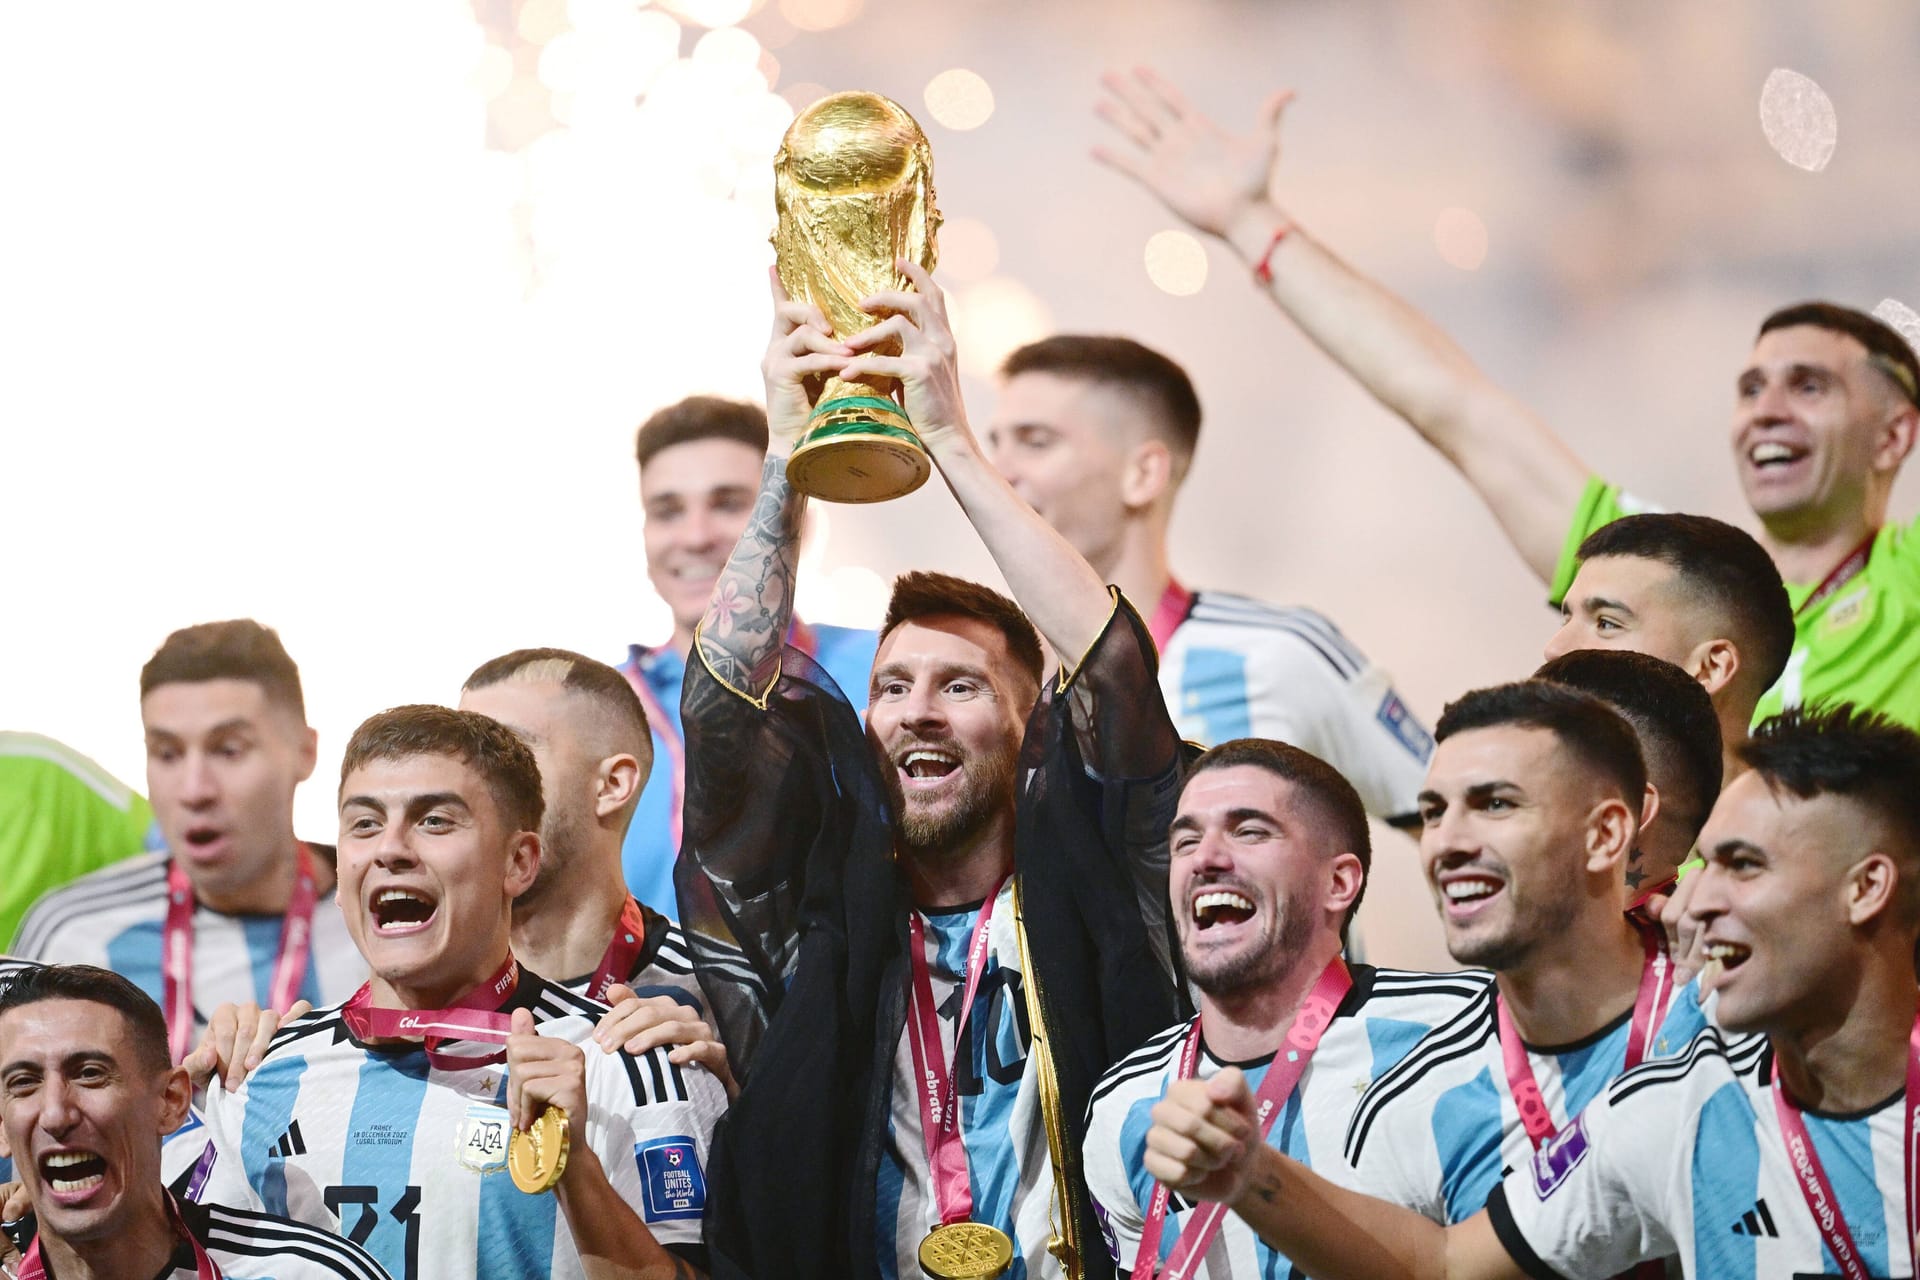 Die Fußball-WM 2022 ist Geschichte: Argentinien hat sich mit einem hochdramatischen Finalsieg gegen Frankreich zum Weltmeister gekürt. t-online blickt auf die Momente des Turniers zurück, die bleiben werden.